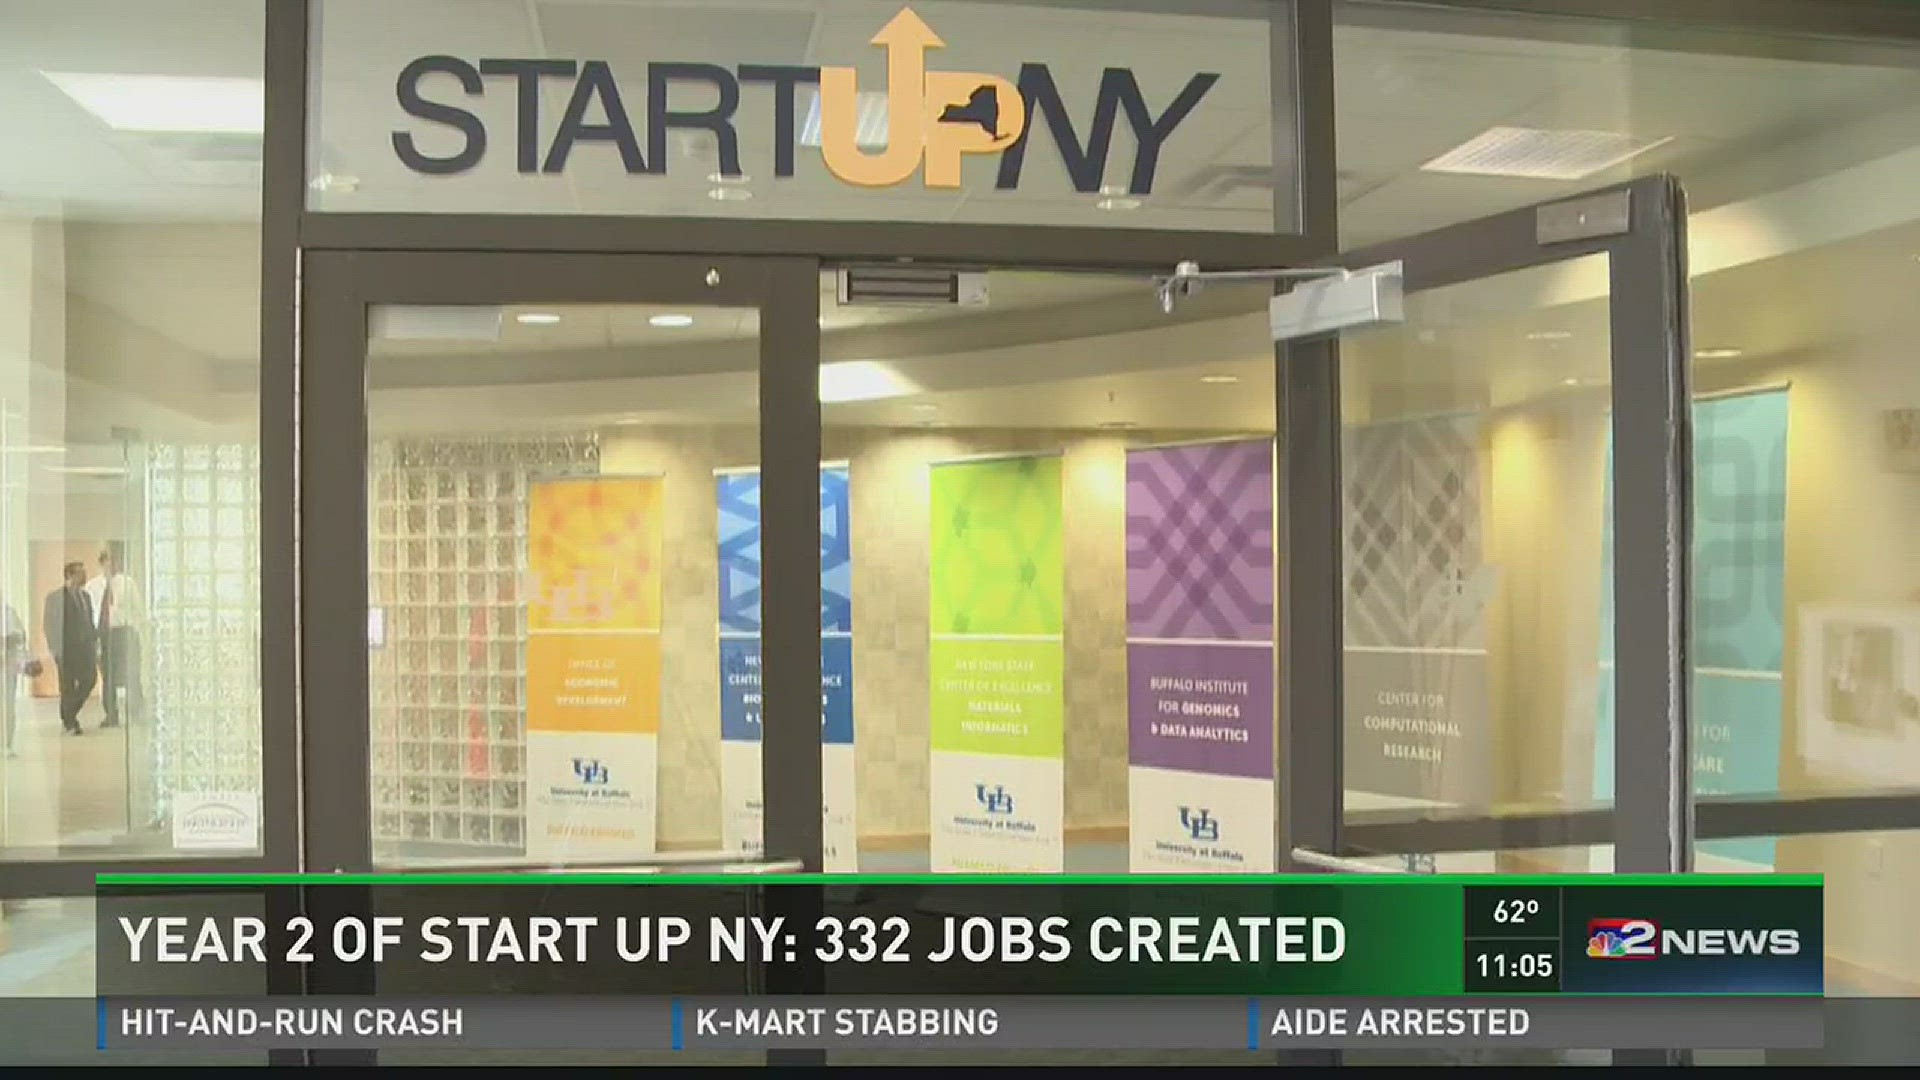 YEAR 2 OF START UP NY: 332 JOBS CREATED